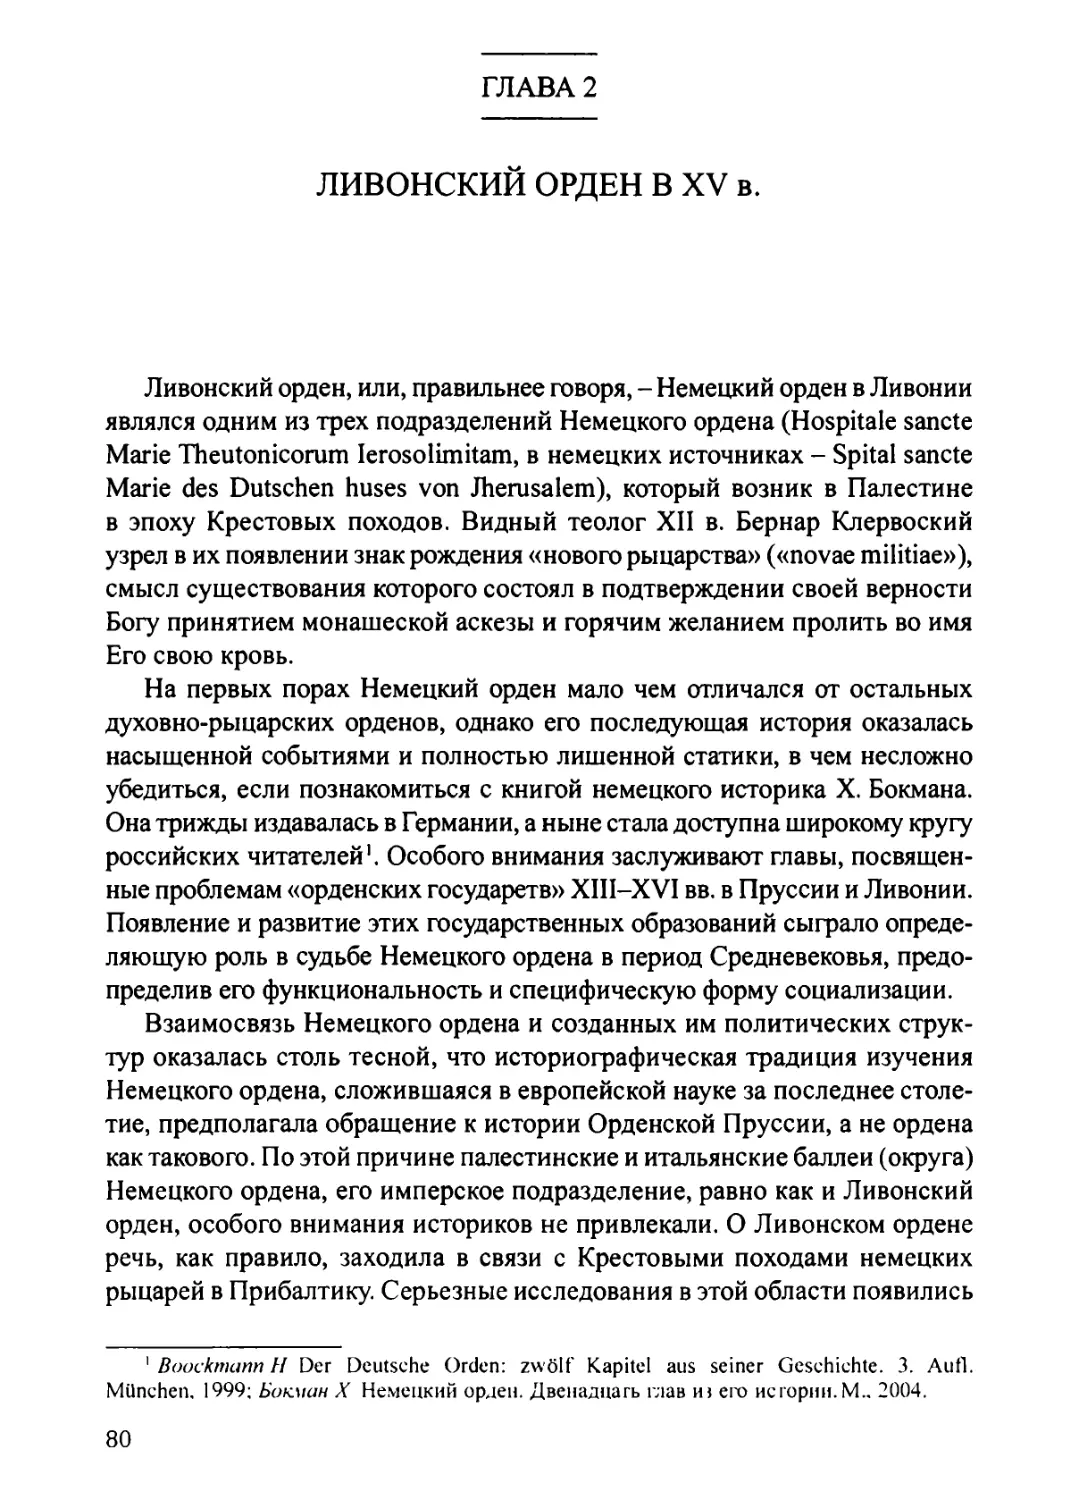 Глава 2. Ливонский орден в XV в.